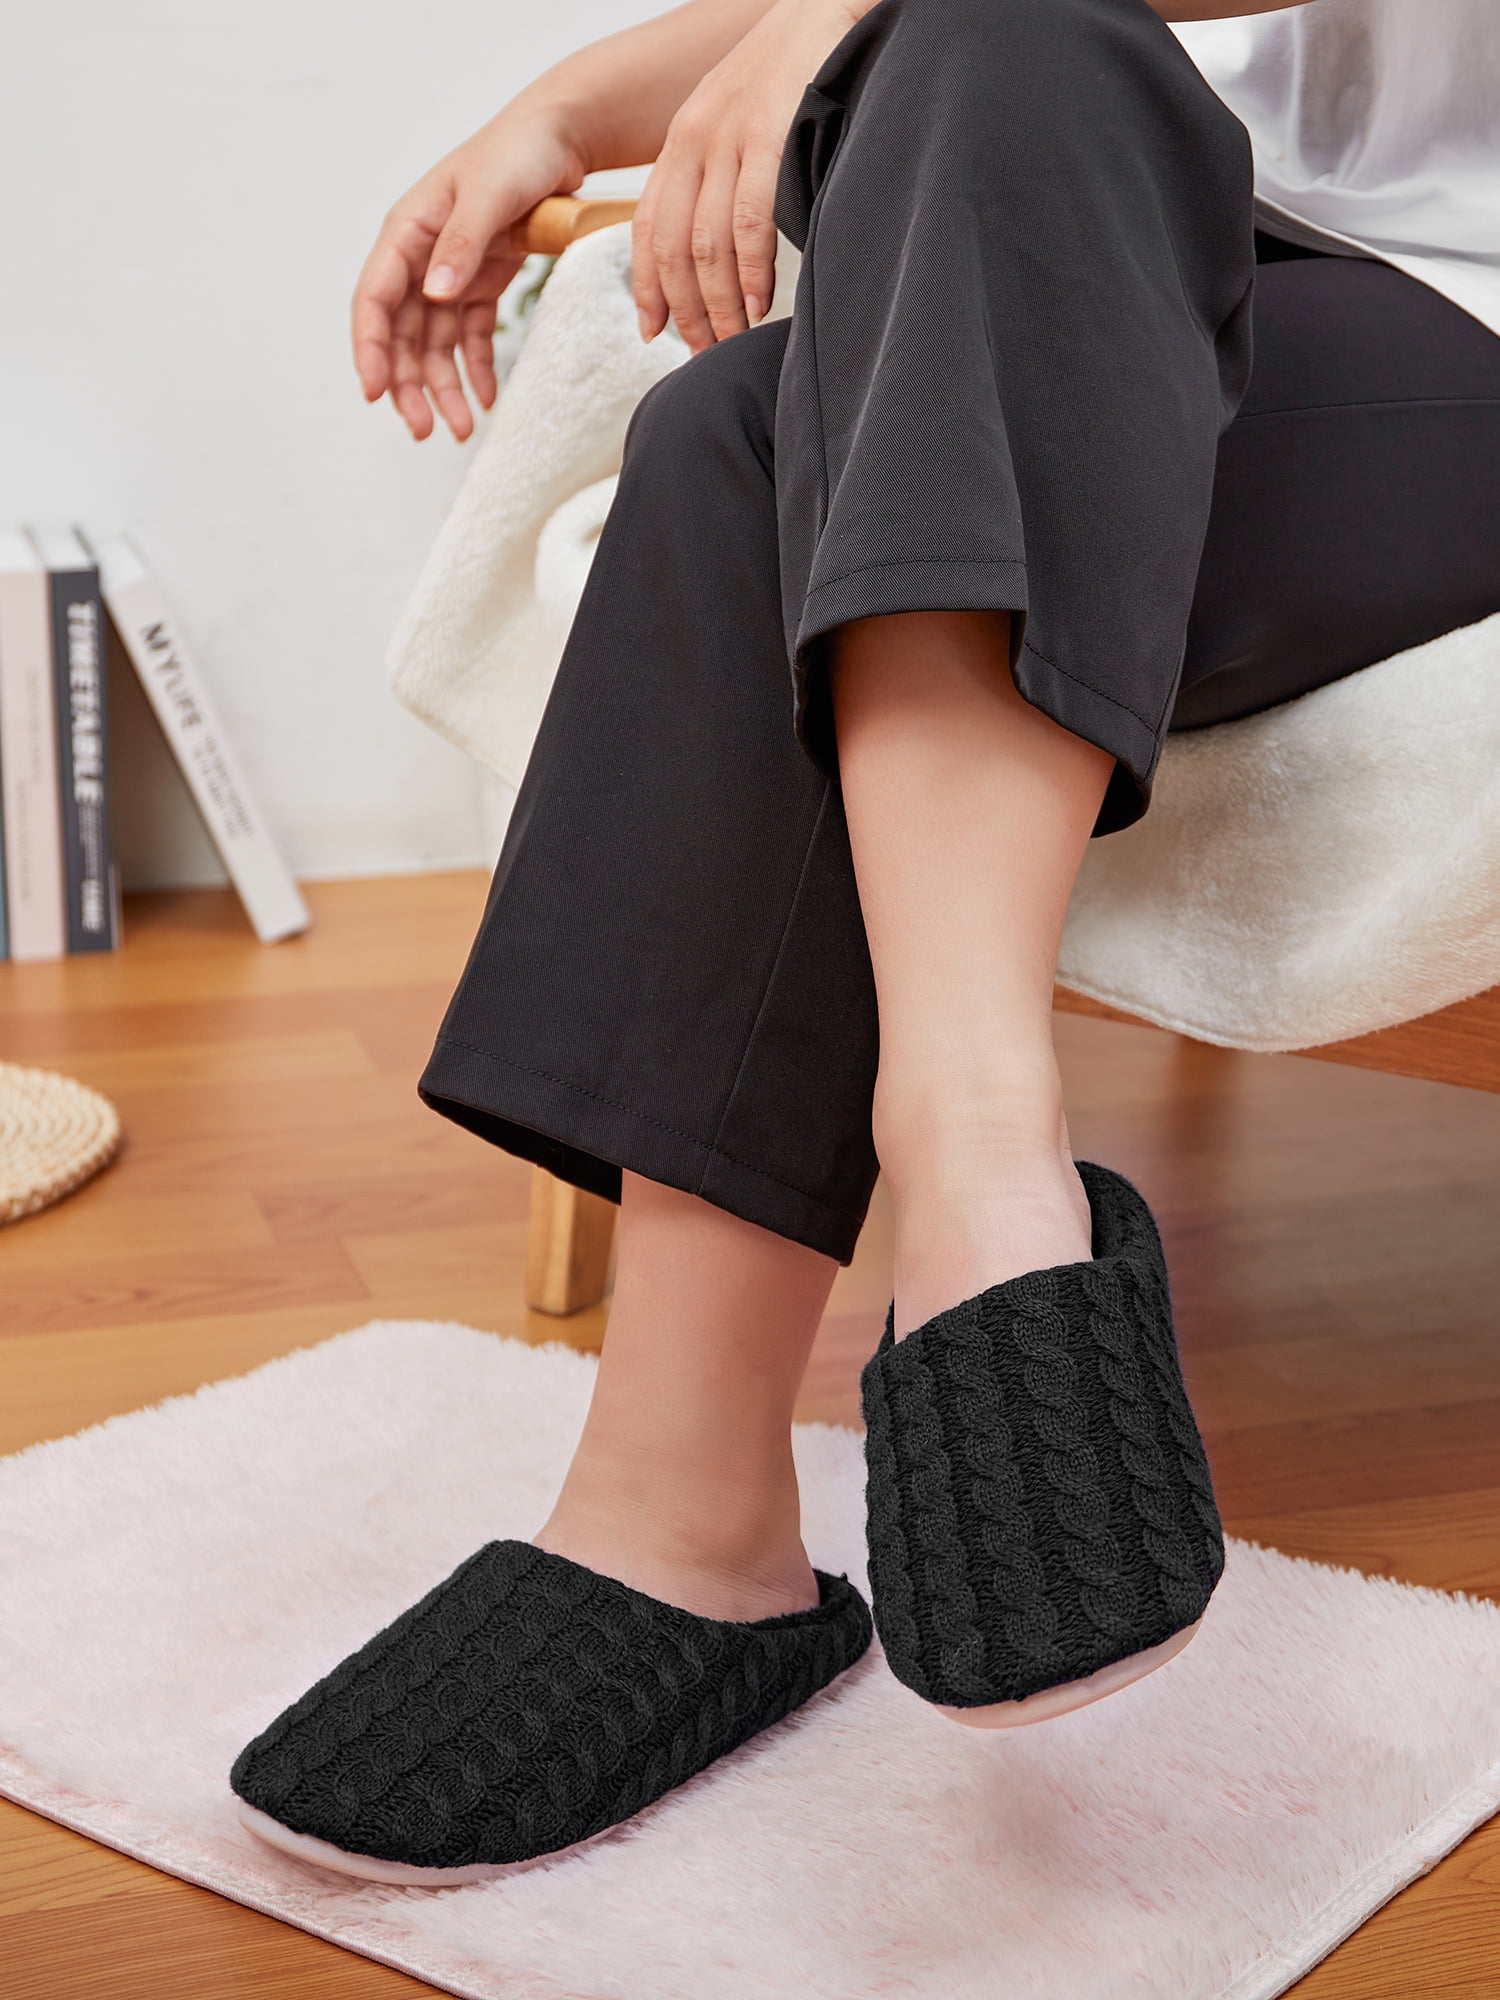 Reebok Men's Memory Foam Adjustable Slide Sandals - Walmart.com